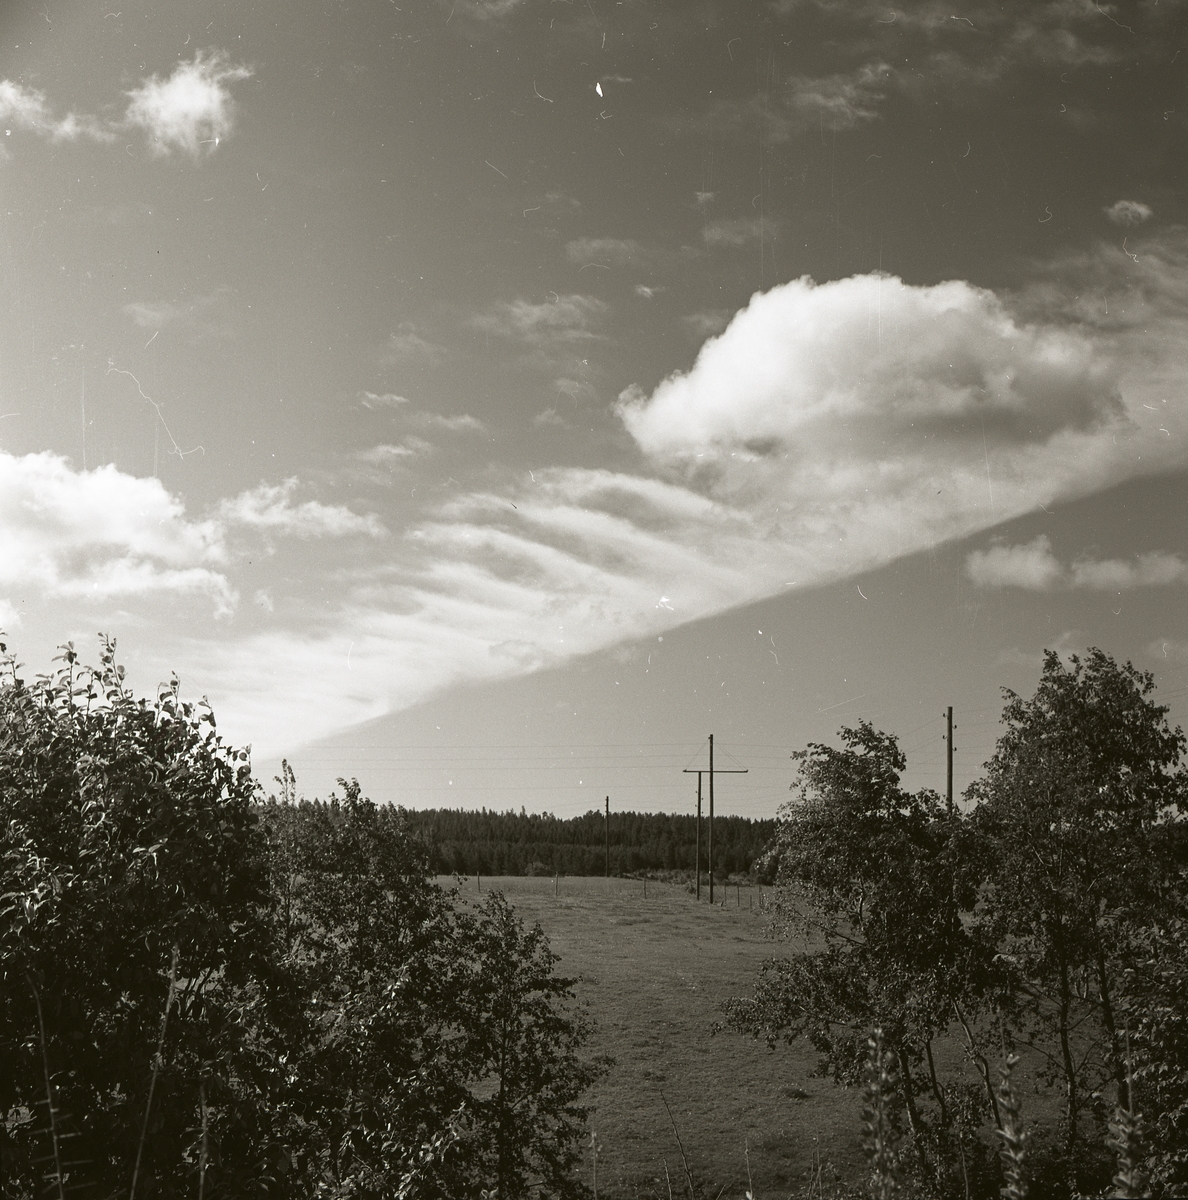 Skog och åkermark under ett fjäderformat moln i Trönö den 5 augusti 1964.